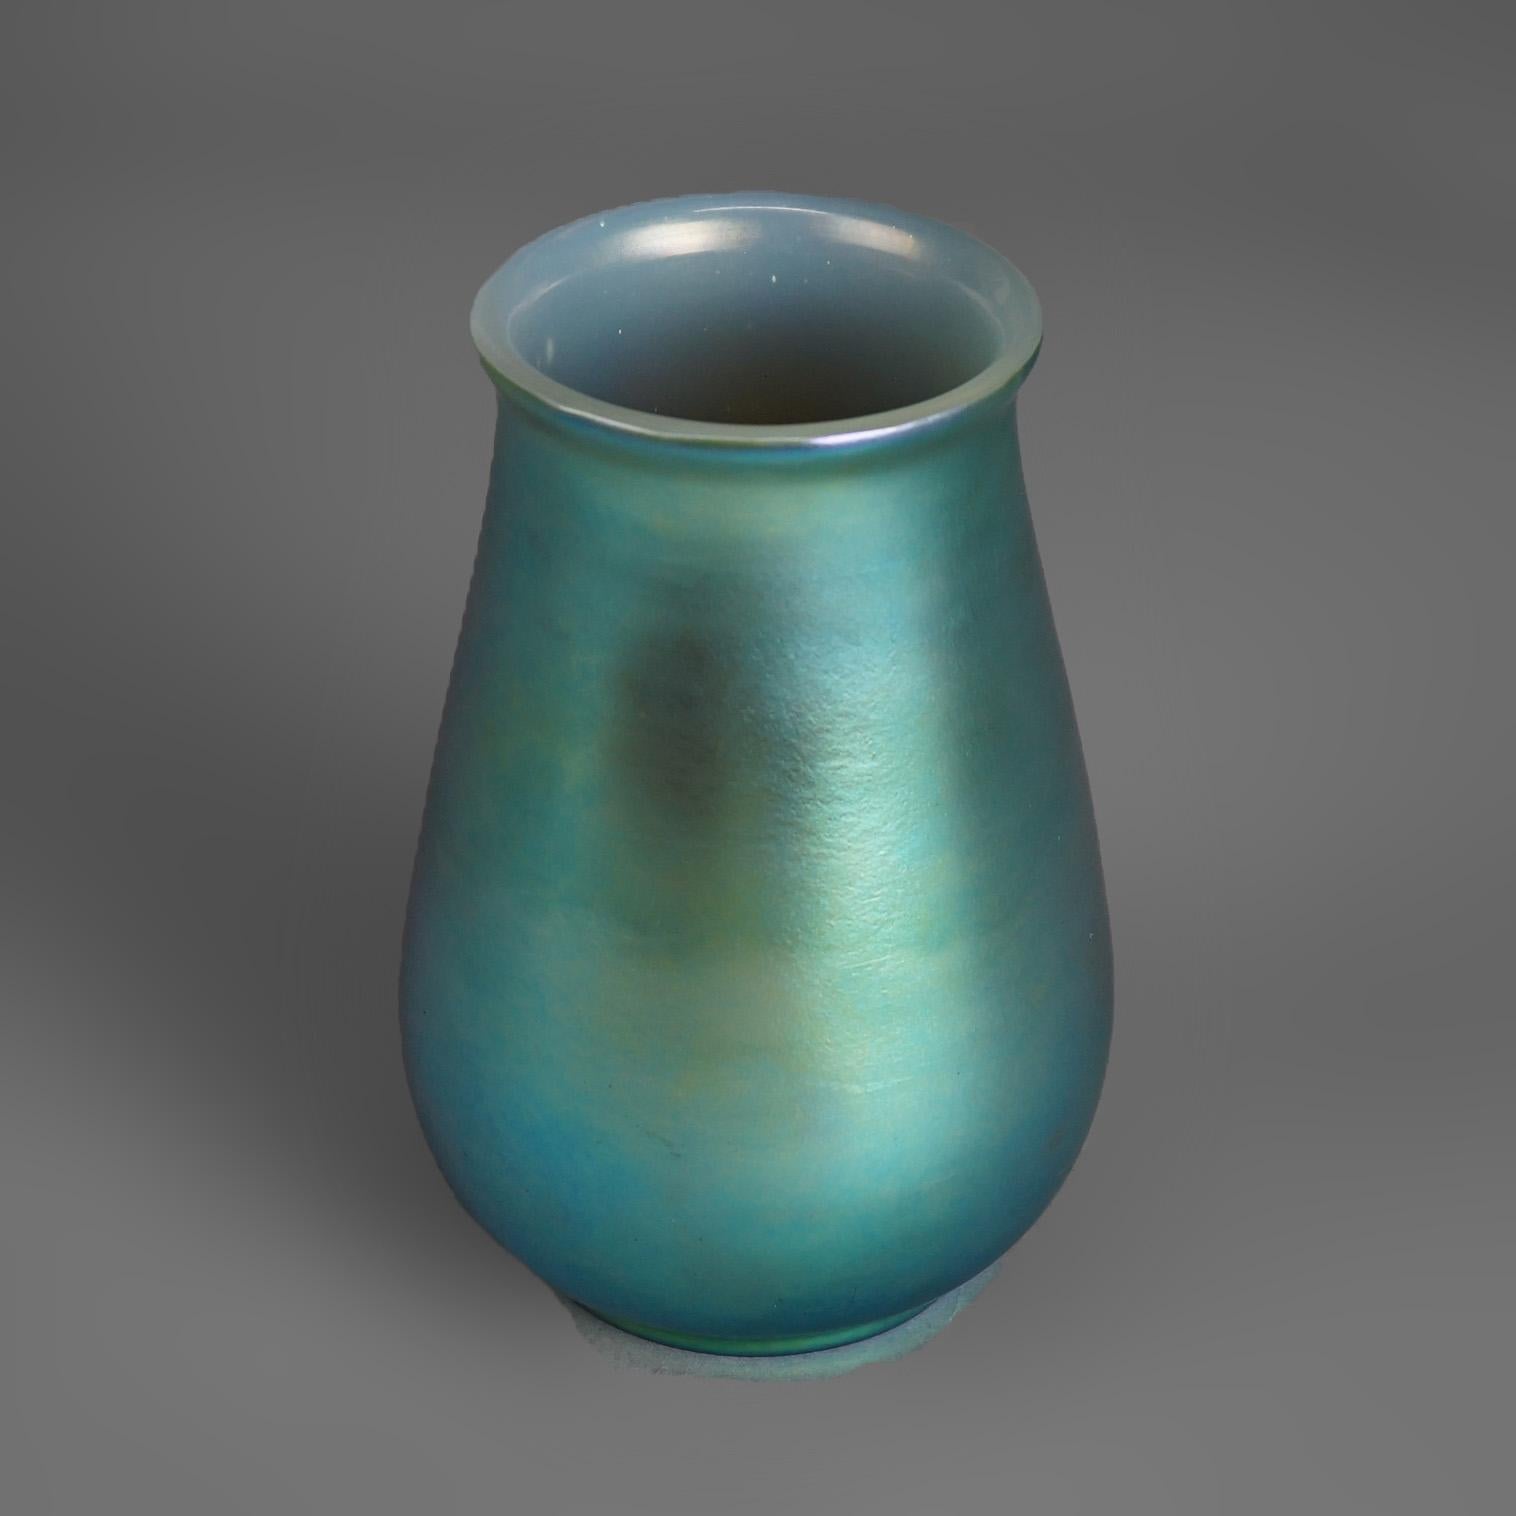 Antique Arts & Crafts Steuben School Blue Aurene Art Glass Vase 20thC
Unmarked

Measures- 8''H x 5.25''W x 5.25''D